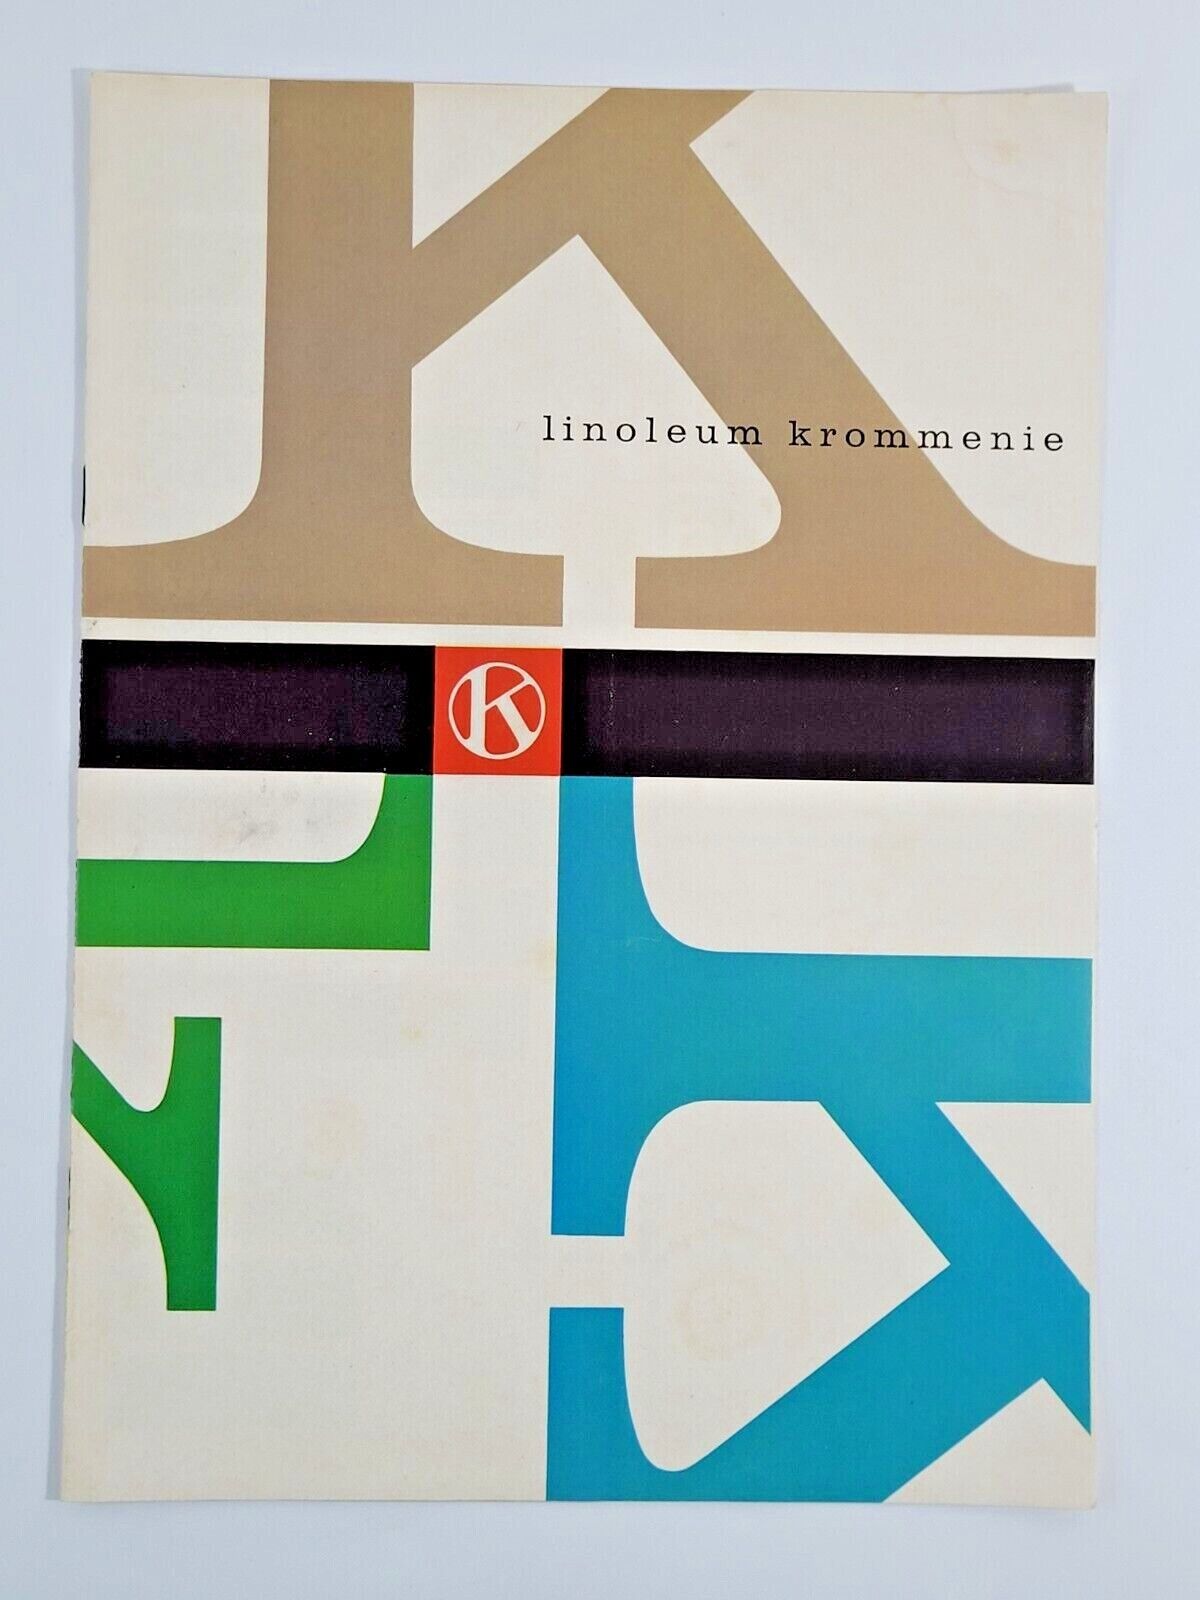 Krommenie Linoleum Catalogue 1961 - Range of Colours and Styles